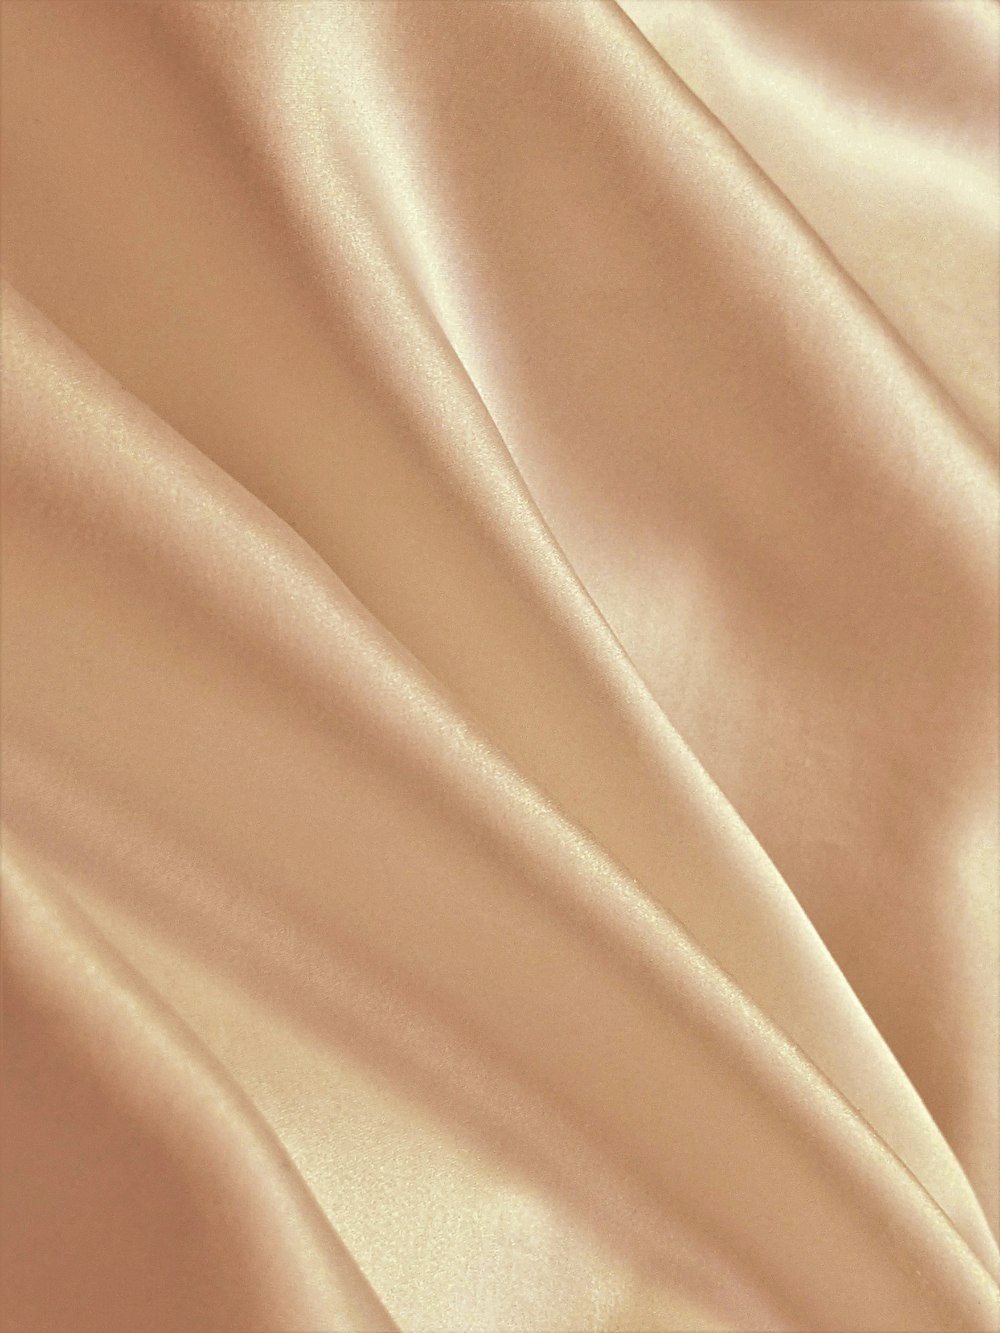 textil marrón en fotografía de cerca